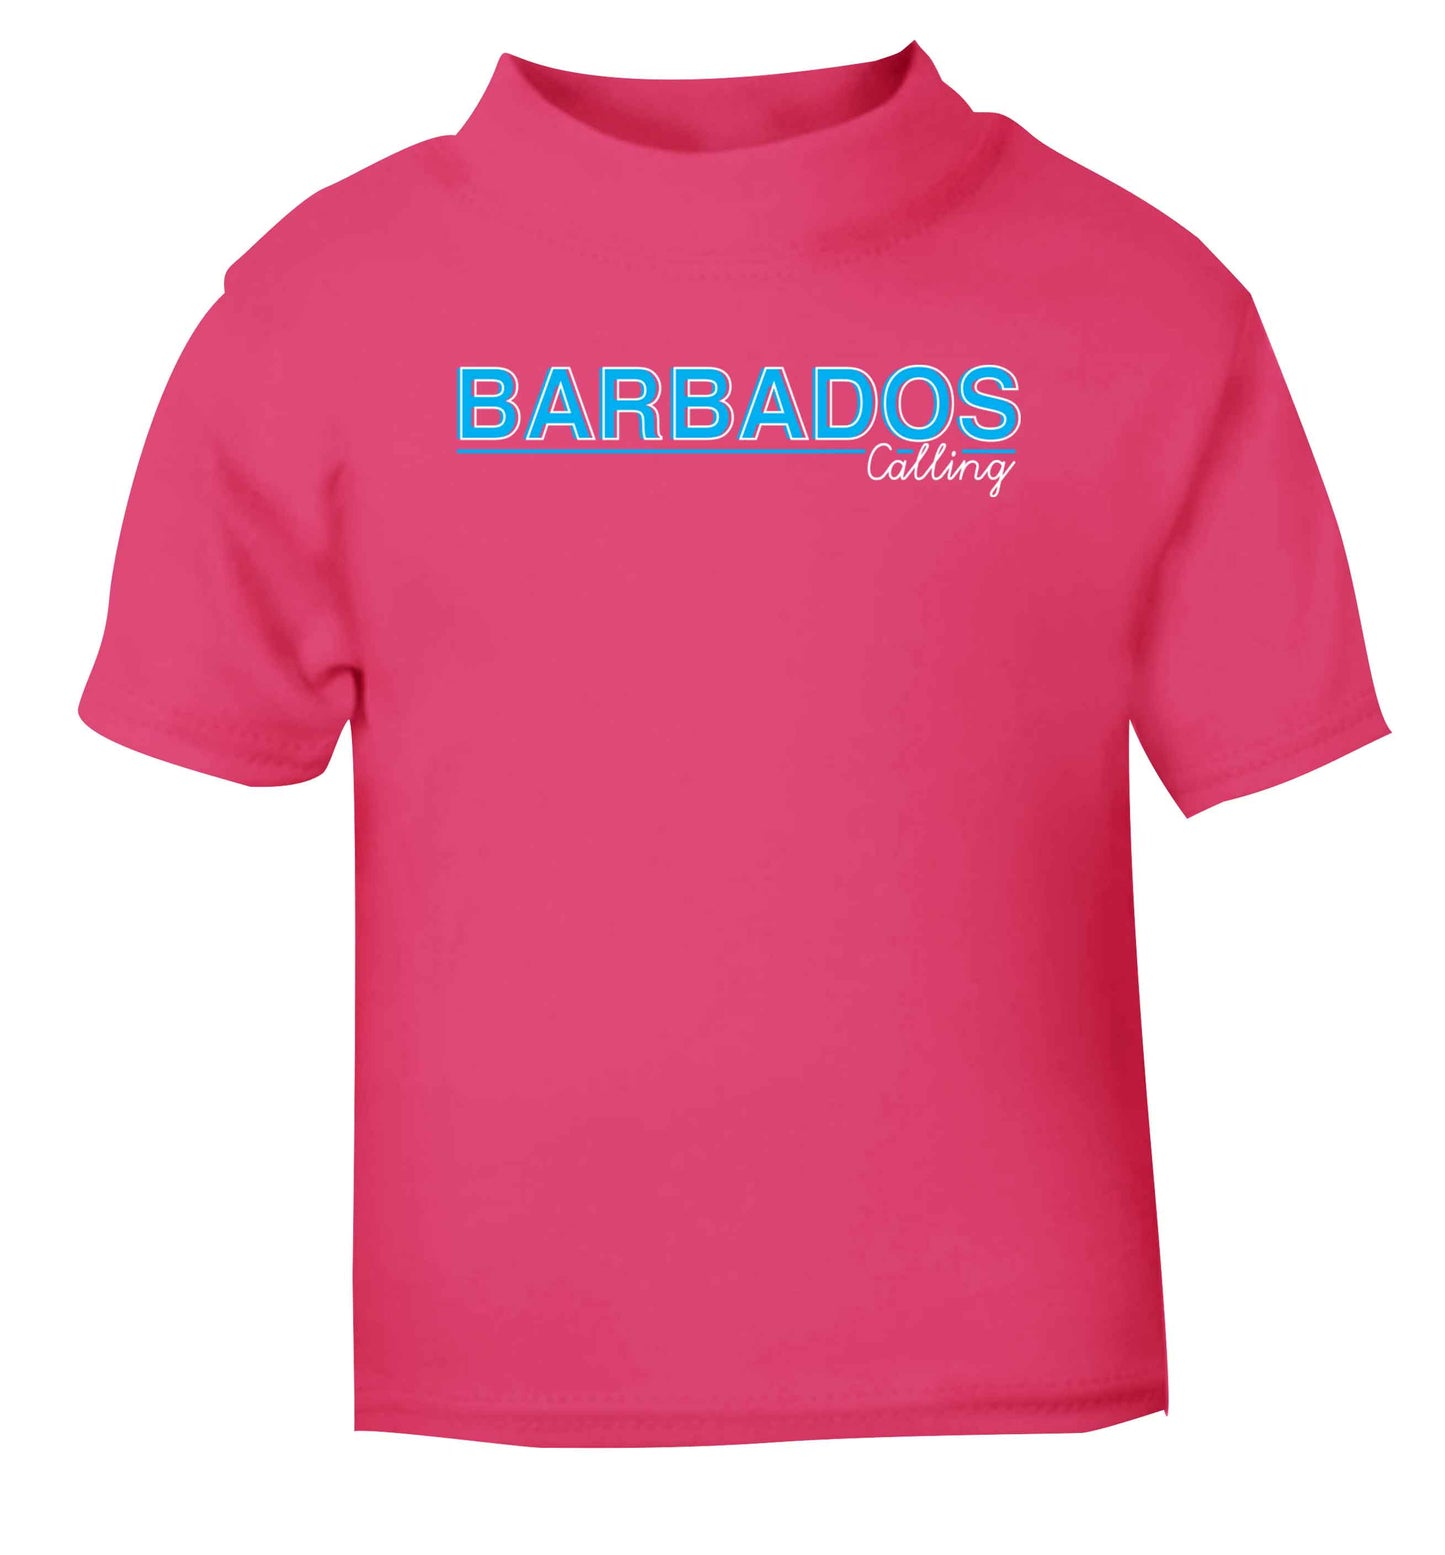 Barbados calling pink Baby Toddler Tshirt 2 Years